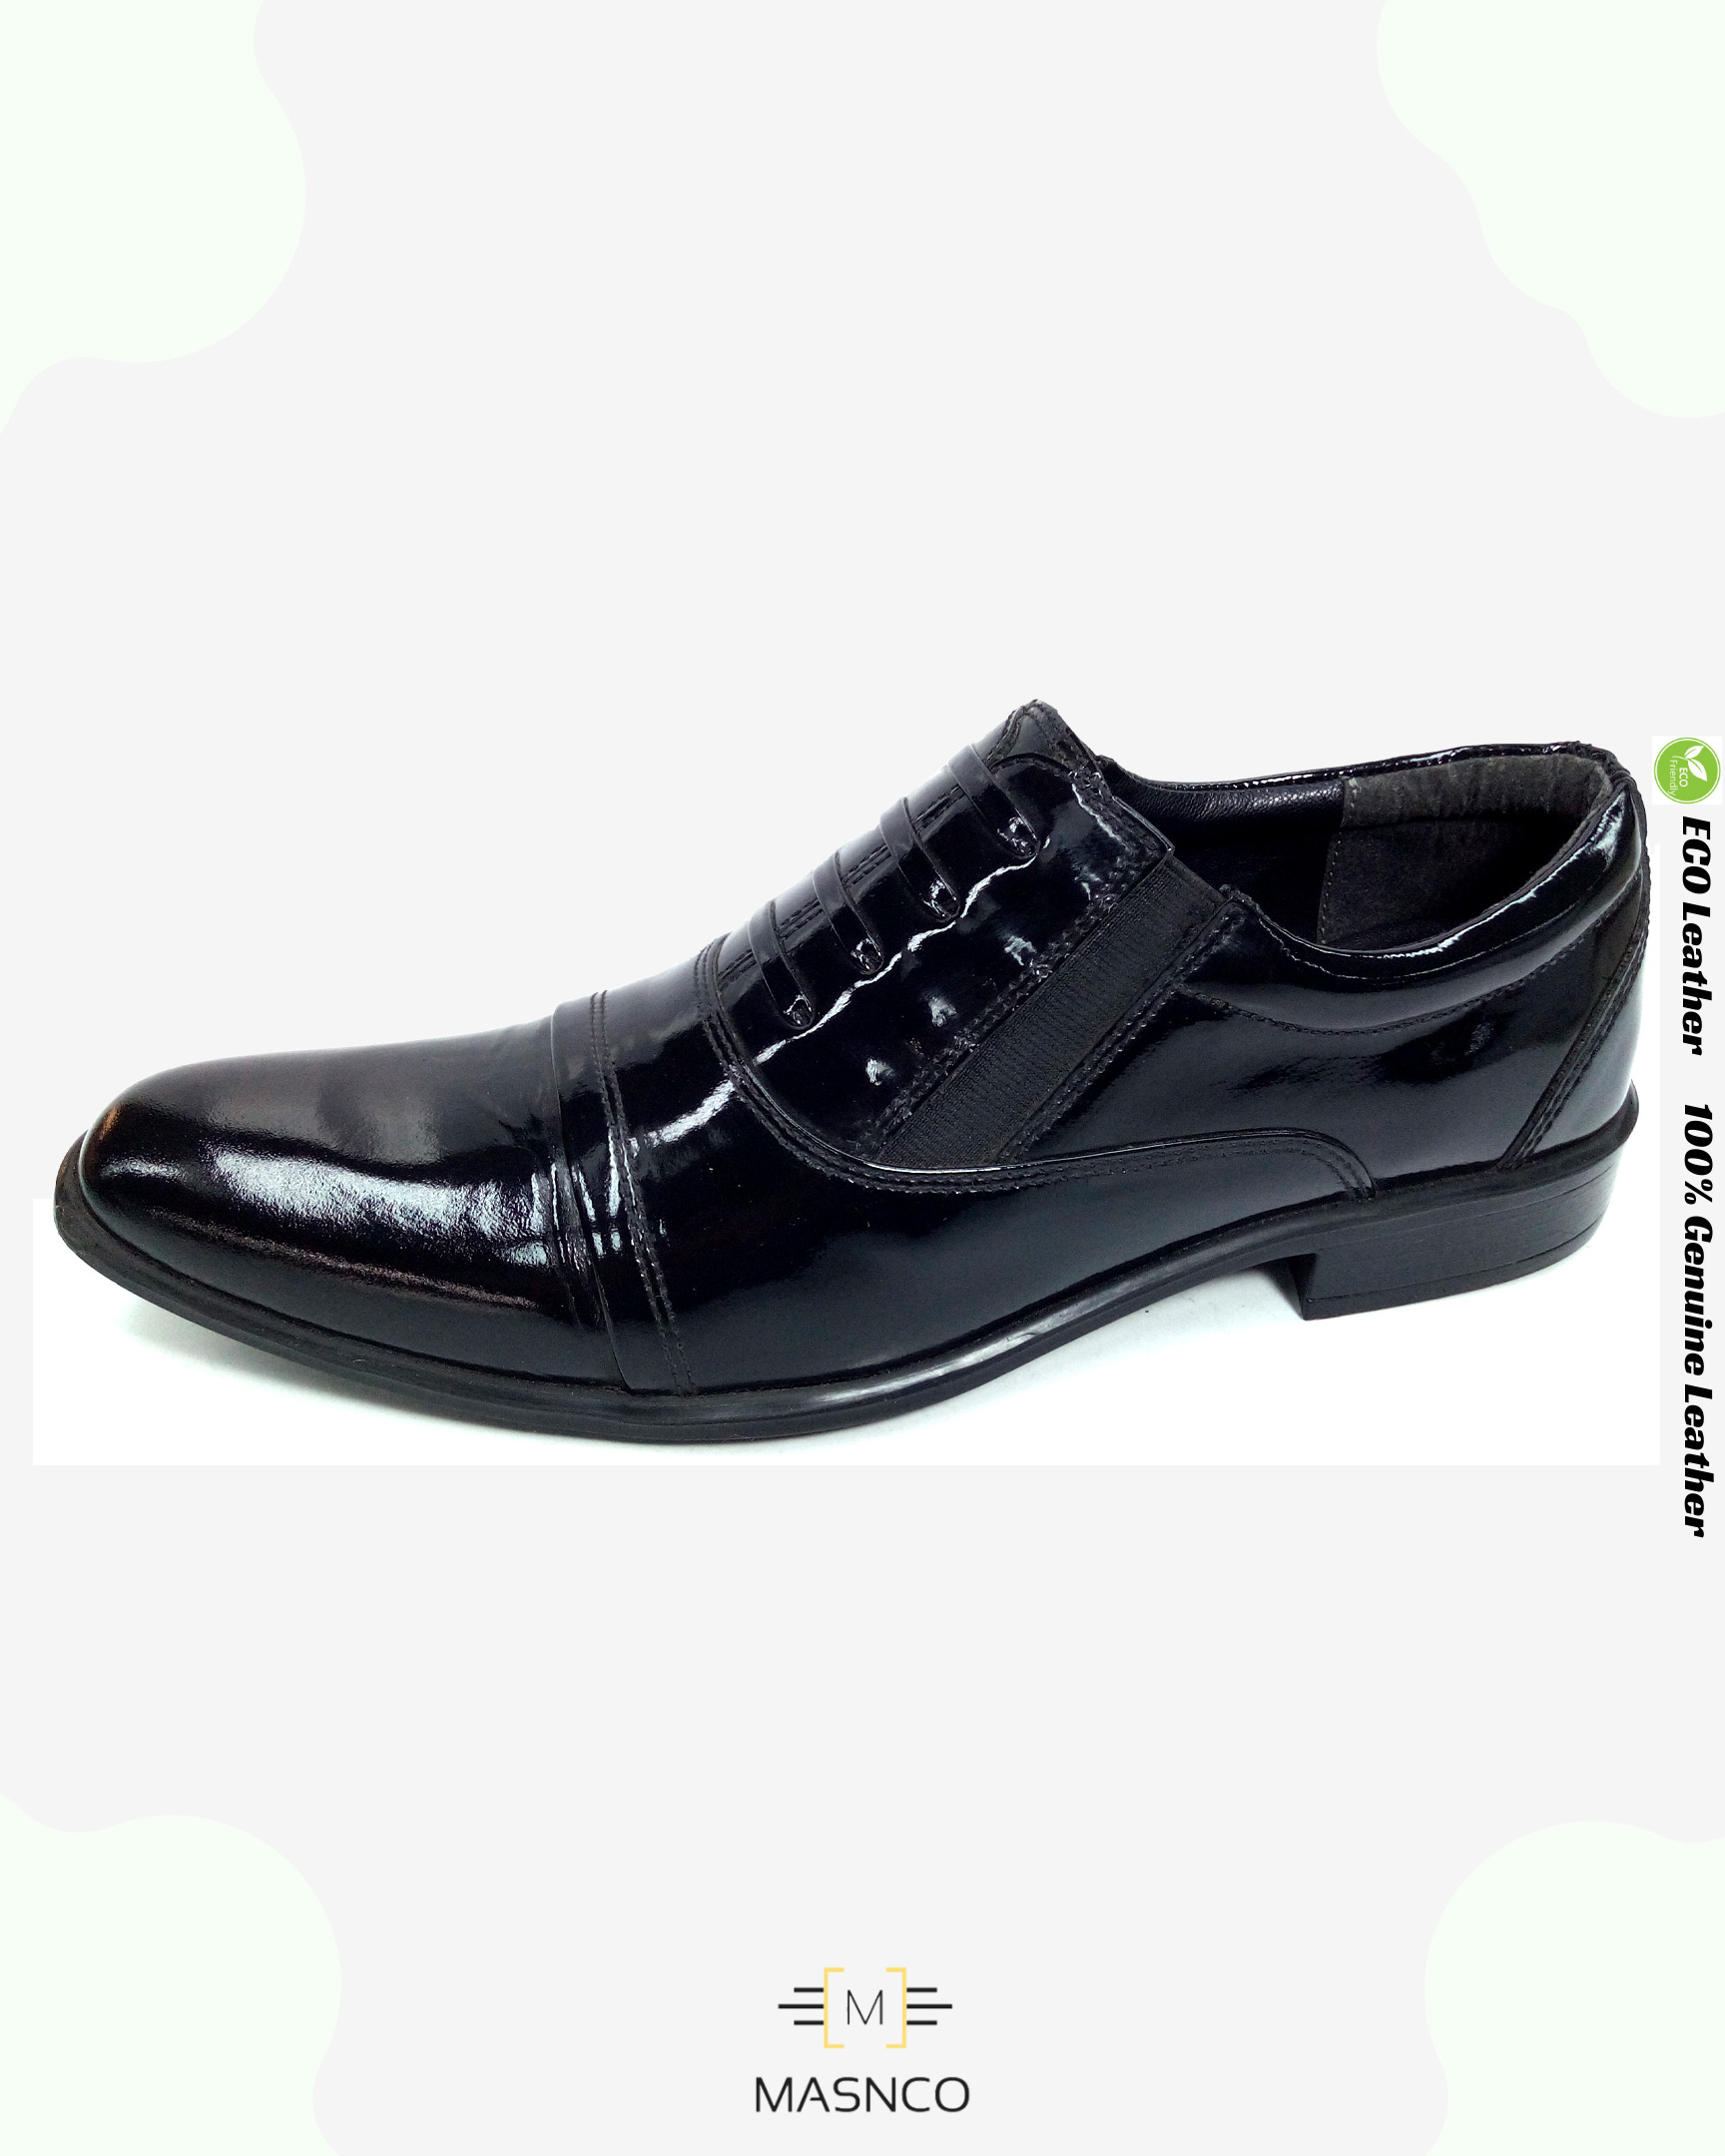 Mirror Polish Slip on Formal Shoes for Men (UK Variant)